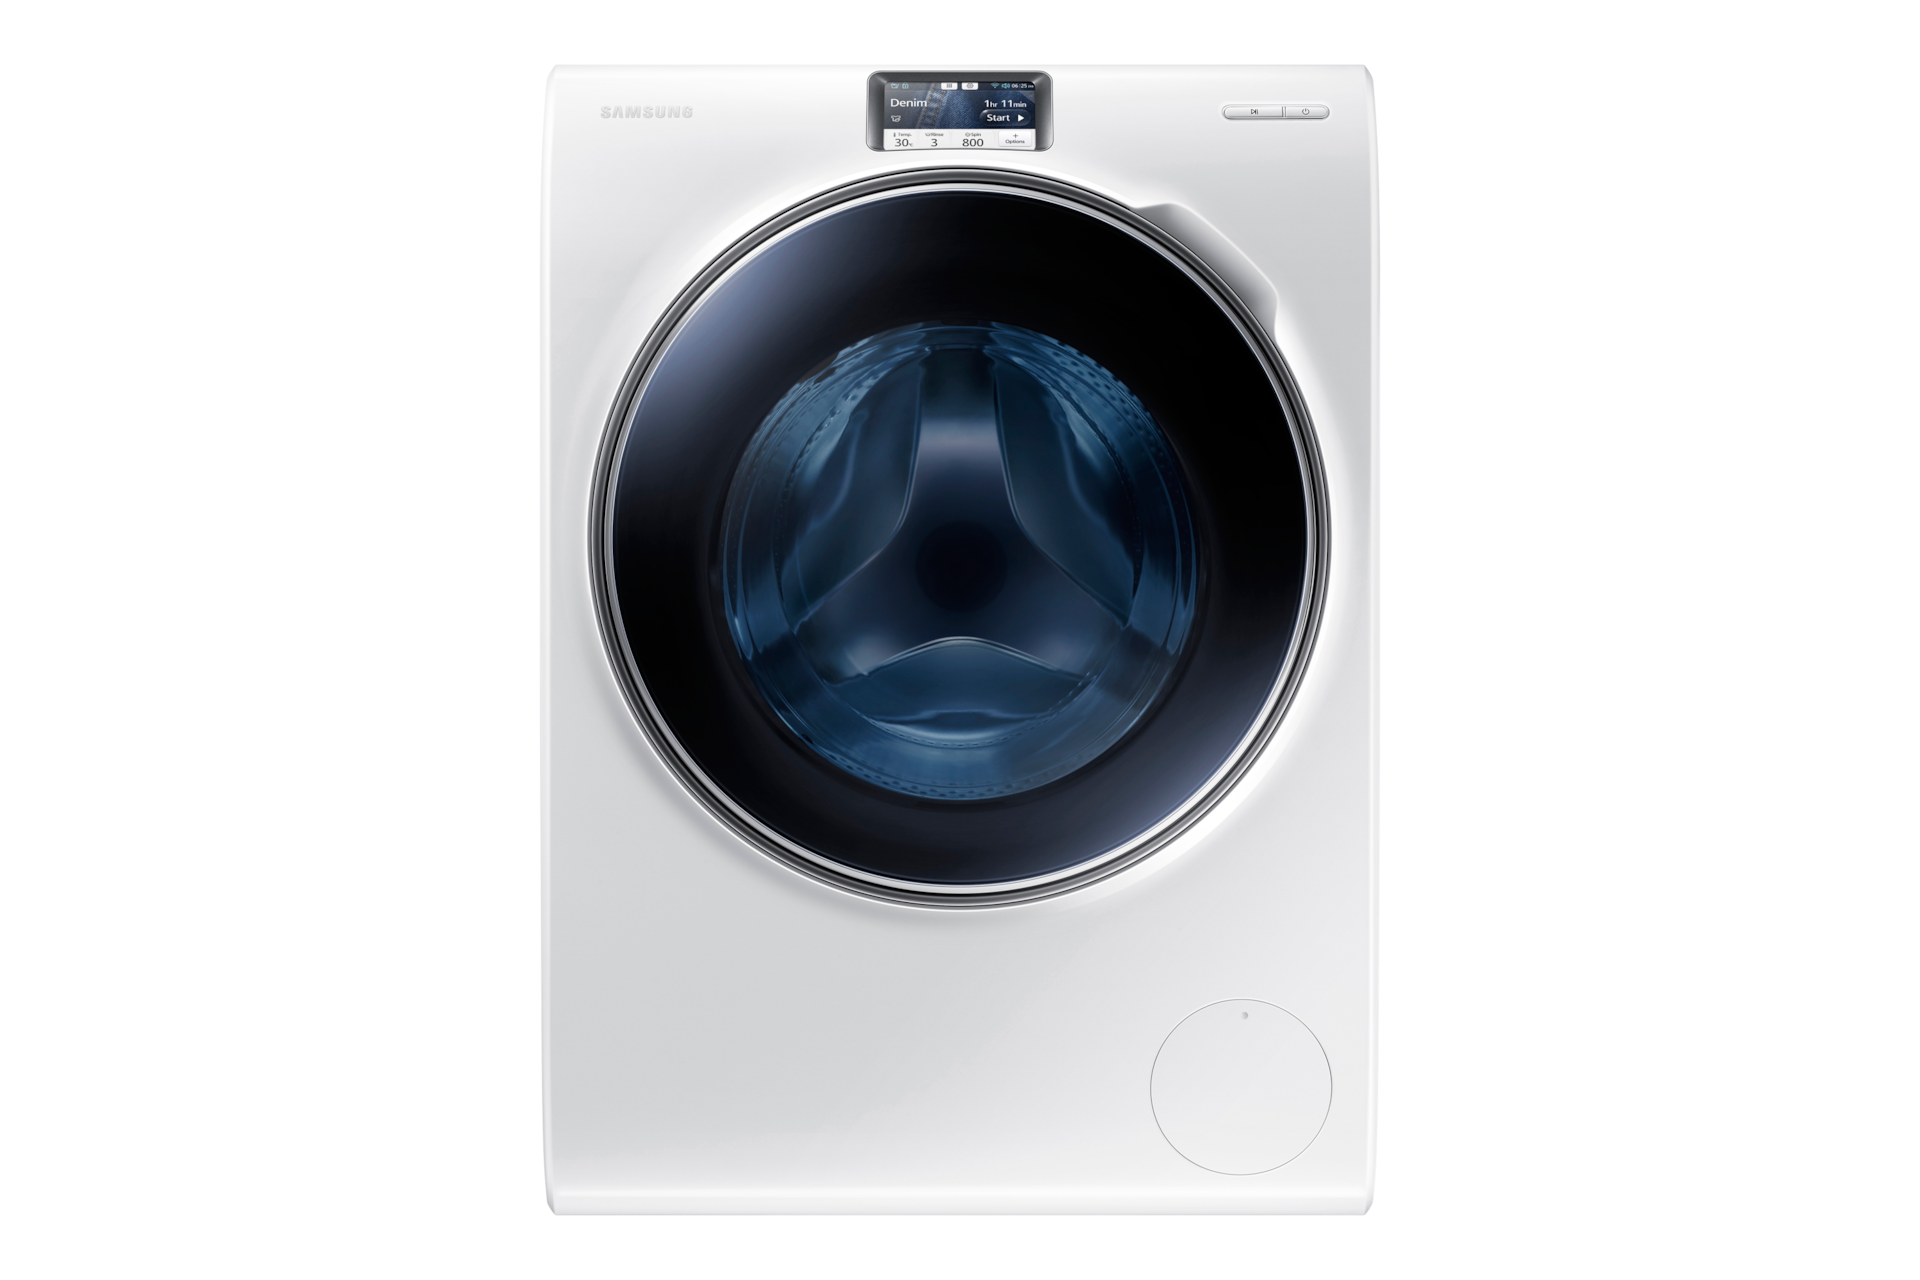 Hervat markeerstift Geweldige eik Ecobubble™ Wasmachine 10 kg WW10H9600EW | Samsung Service NL